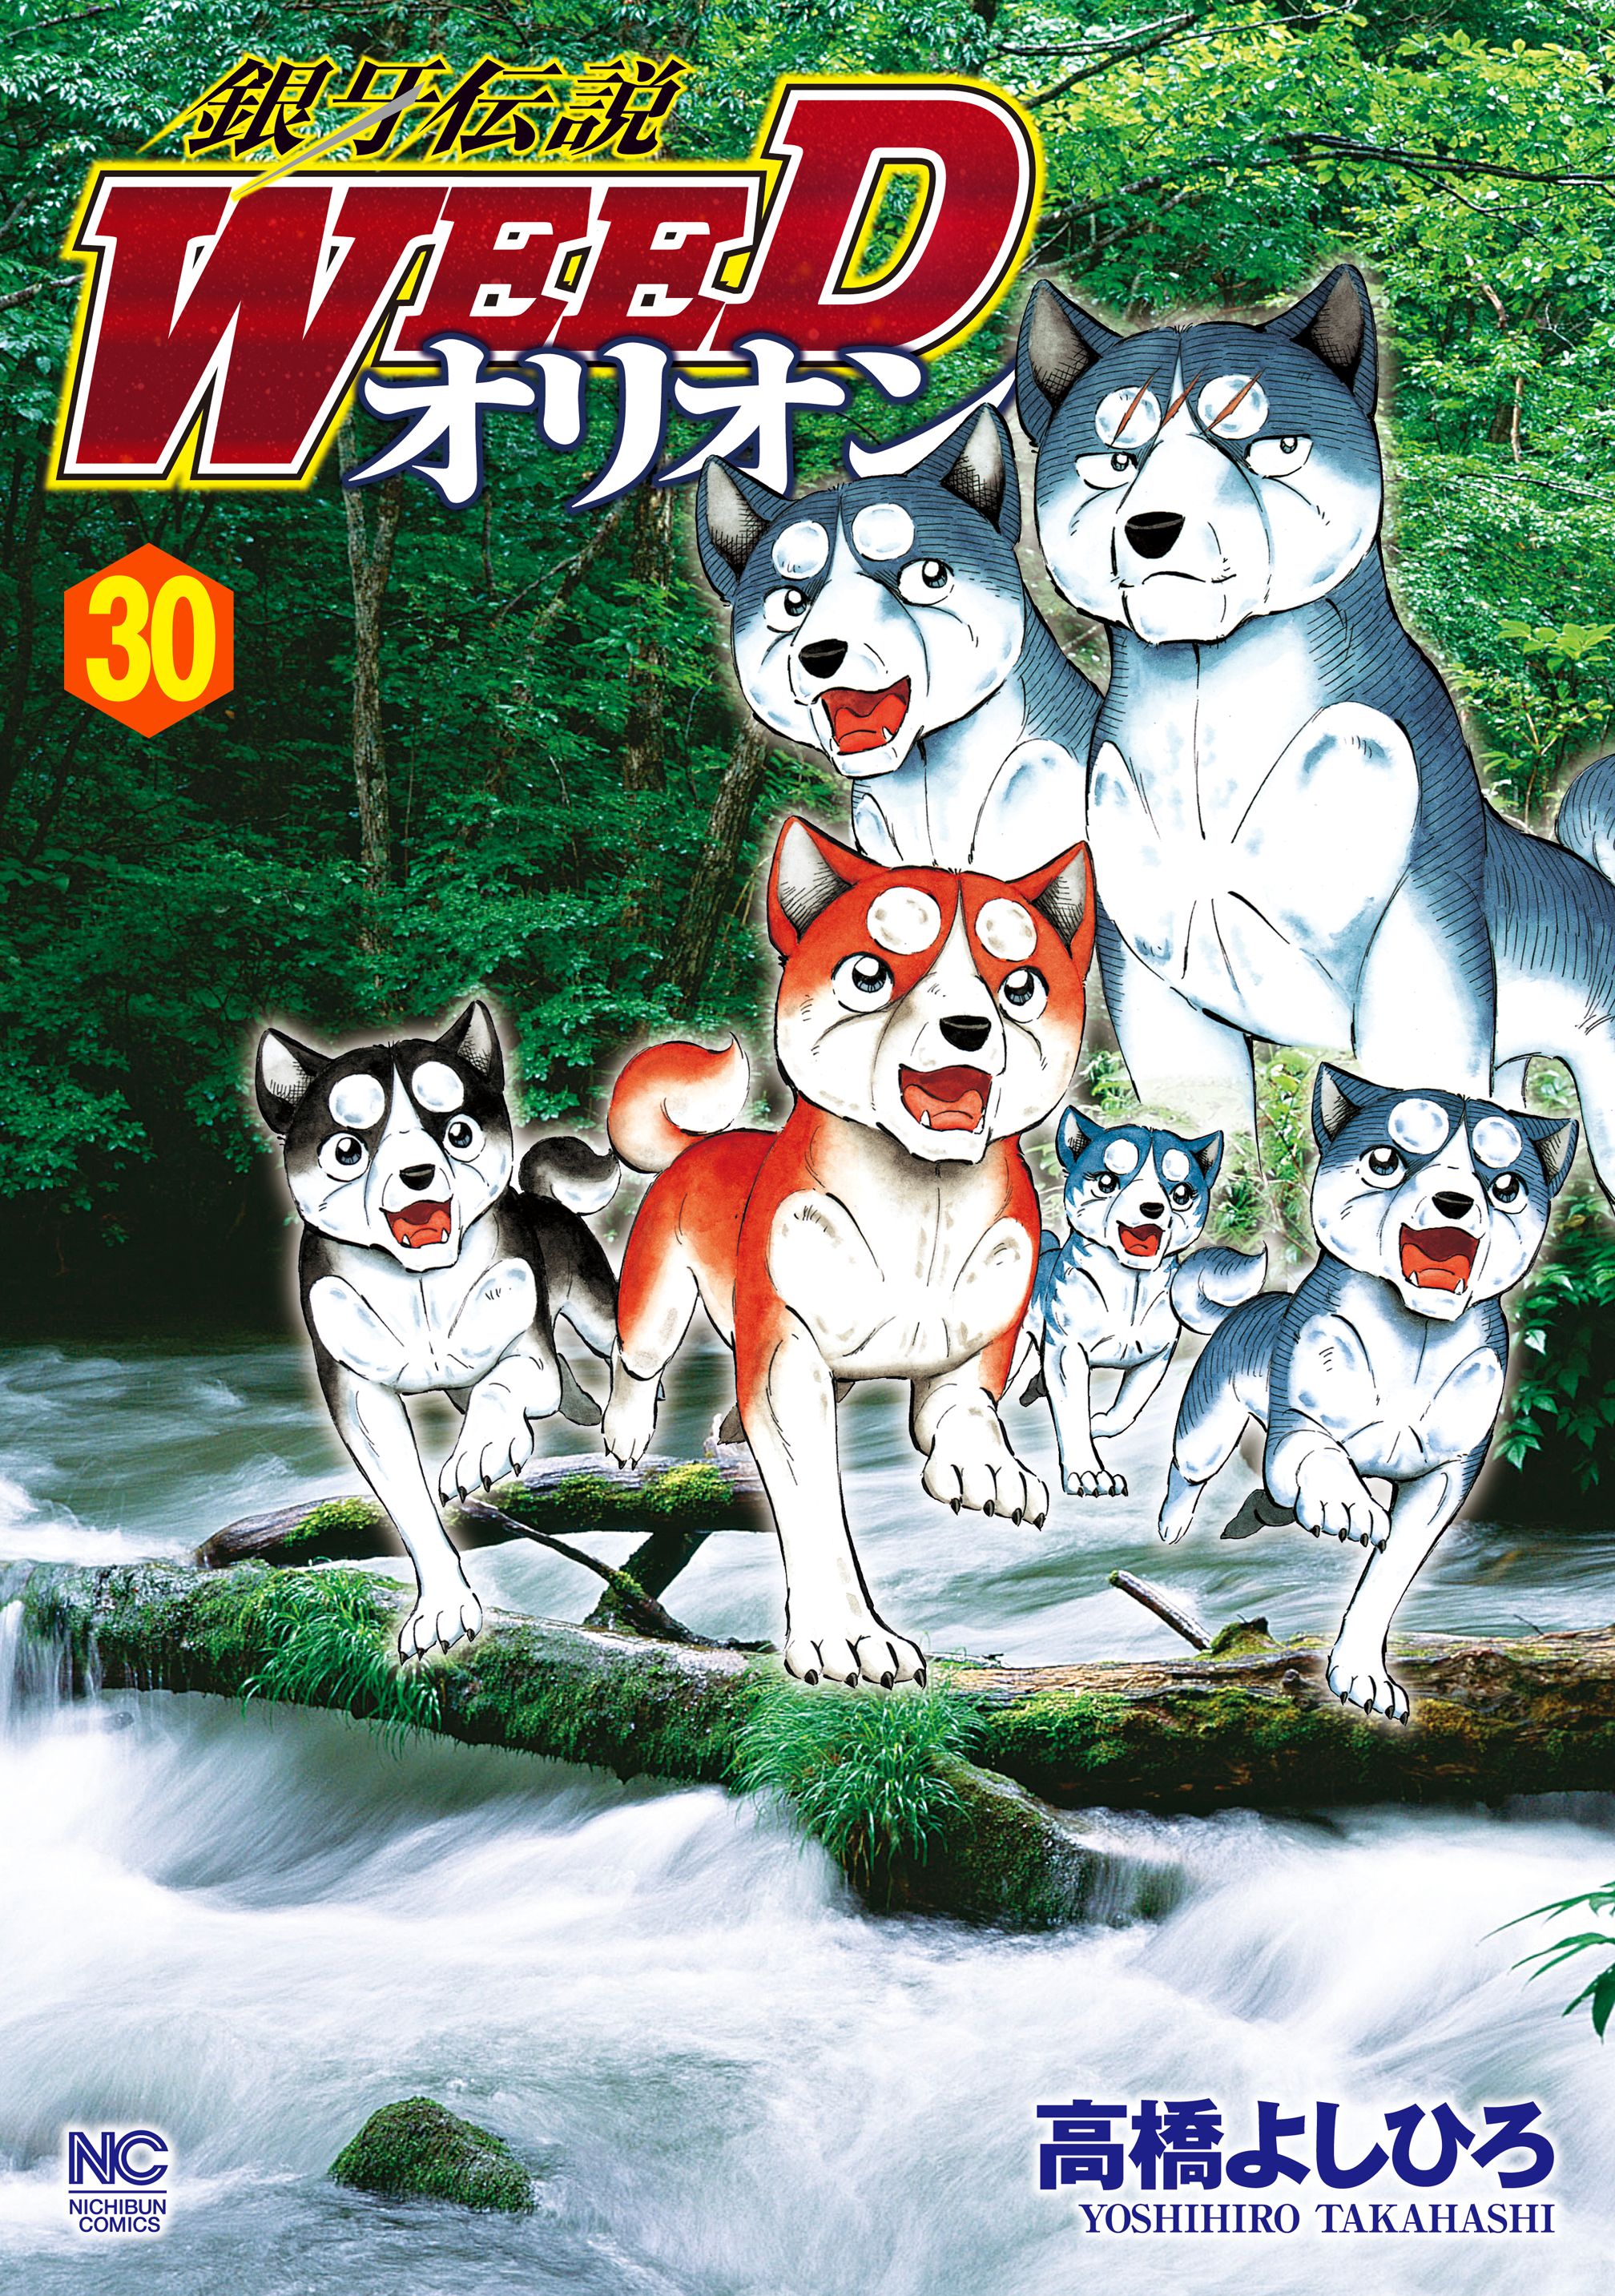 銀牙伝説WEEDオリオン 30(マンガ) - 電子書籍 | U-NEXT 初回600円分無料